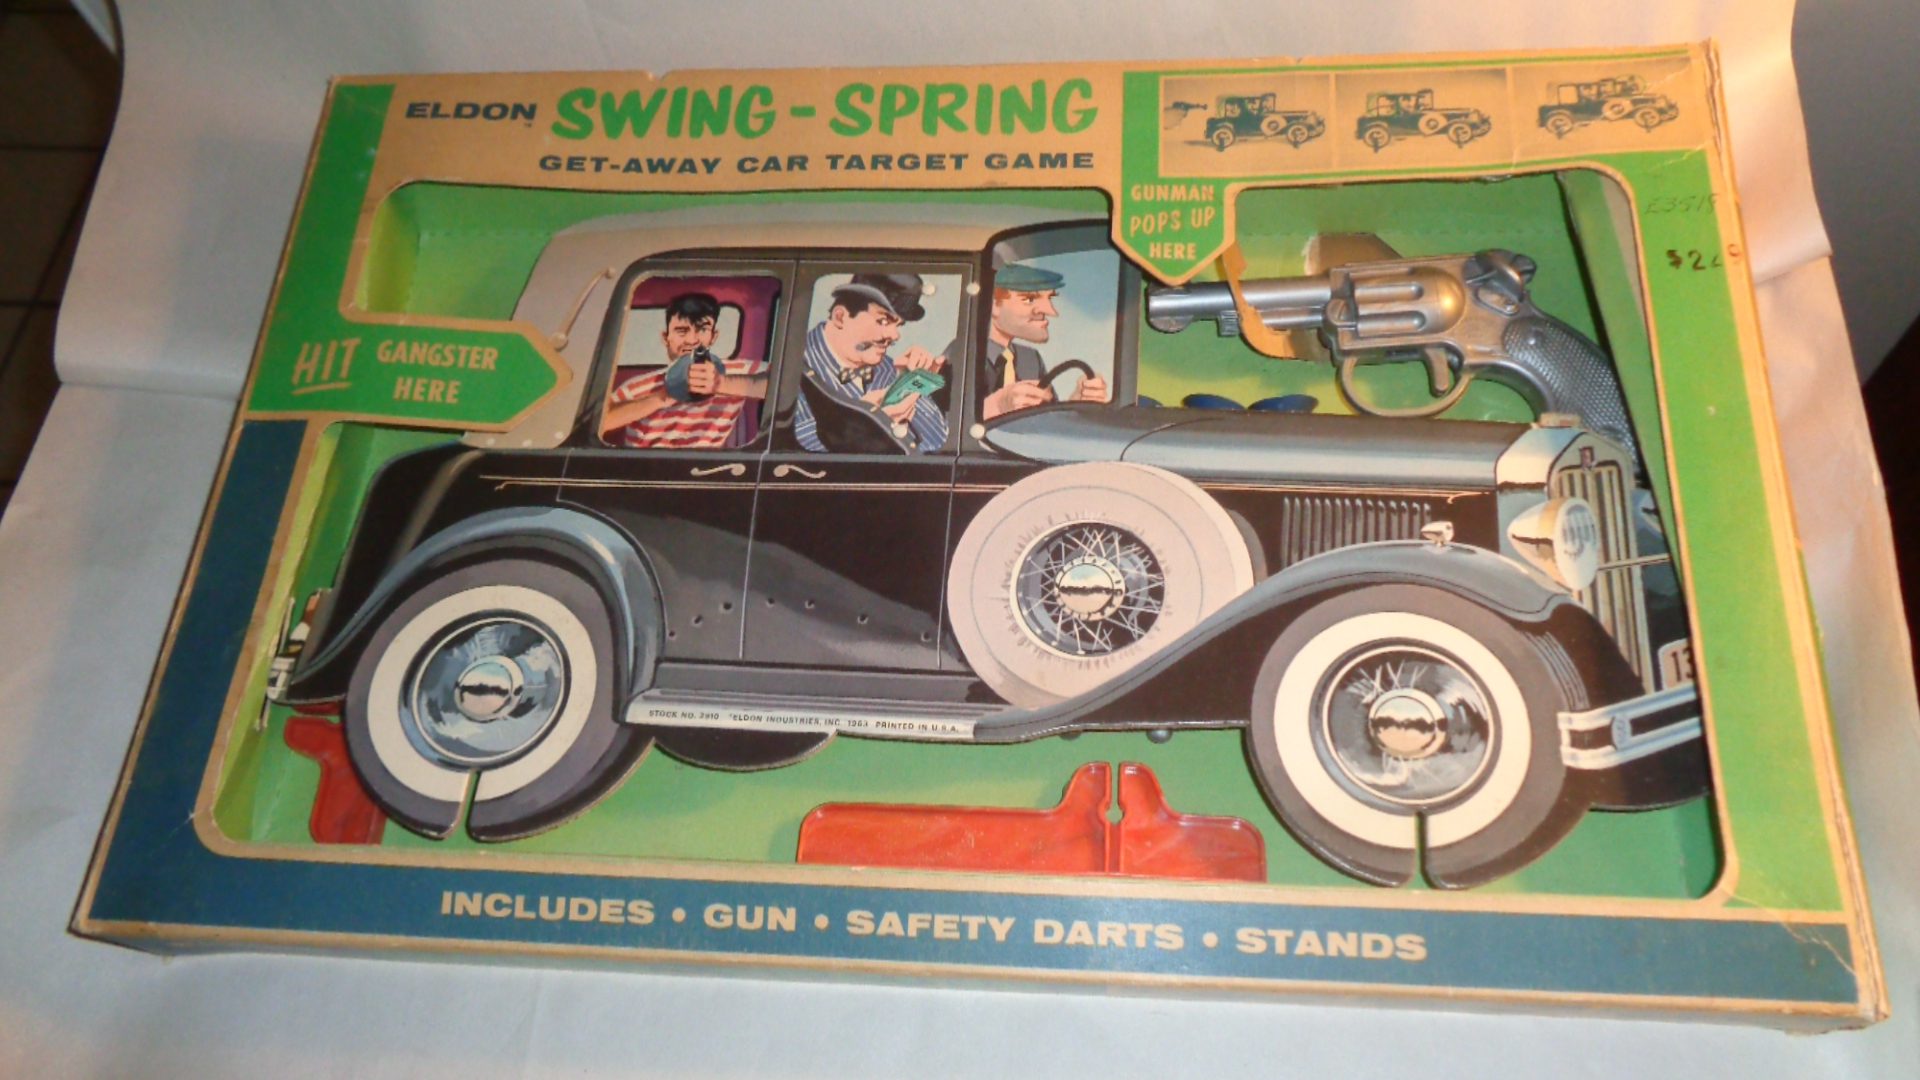 Swing-Spring Get-Away Car Target Game